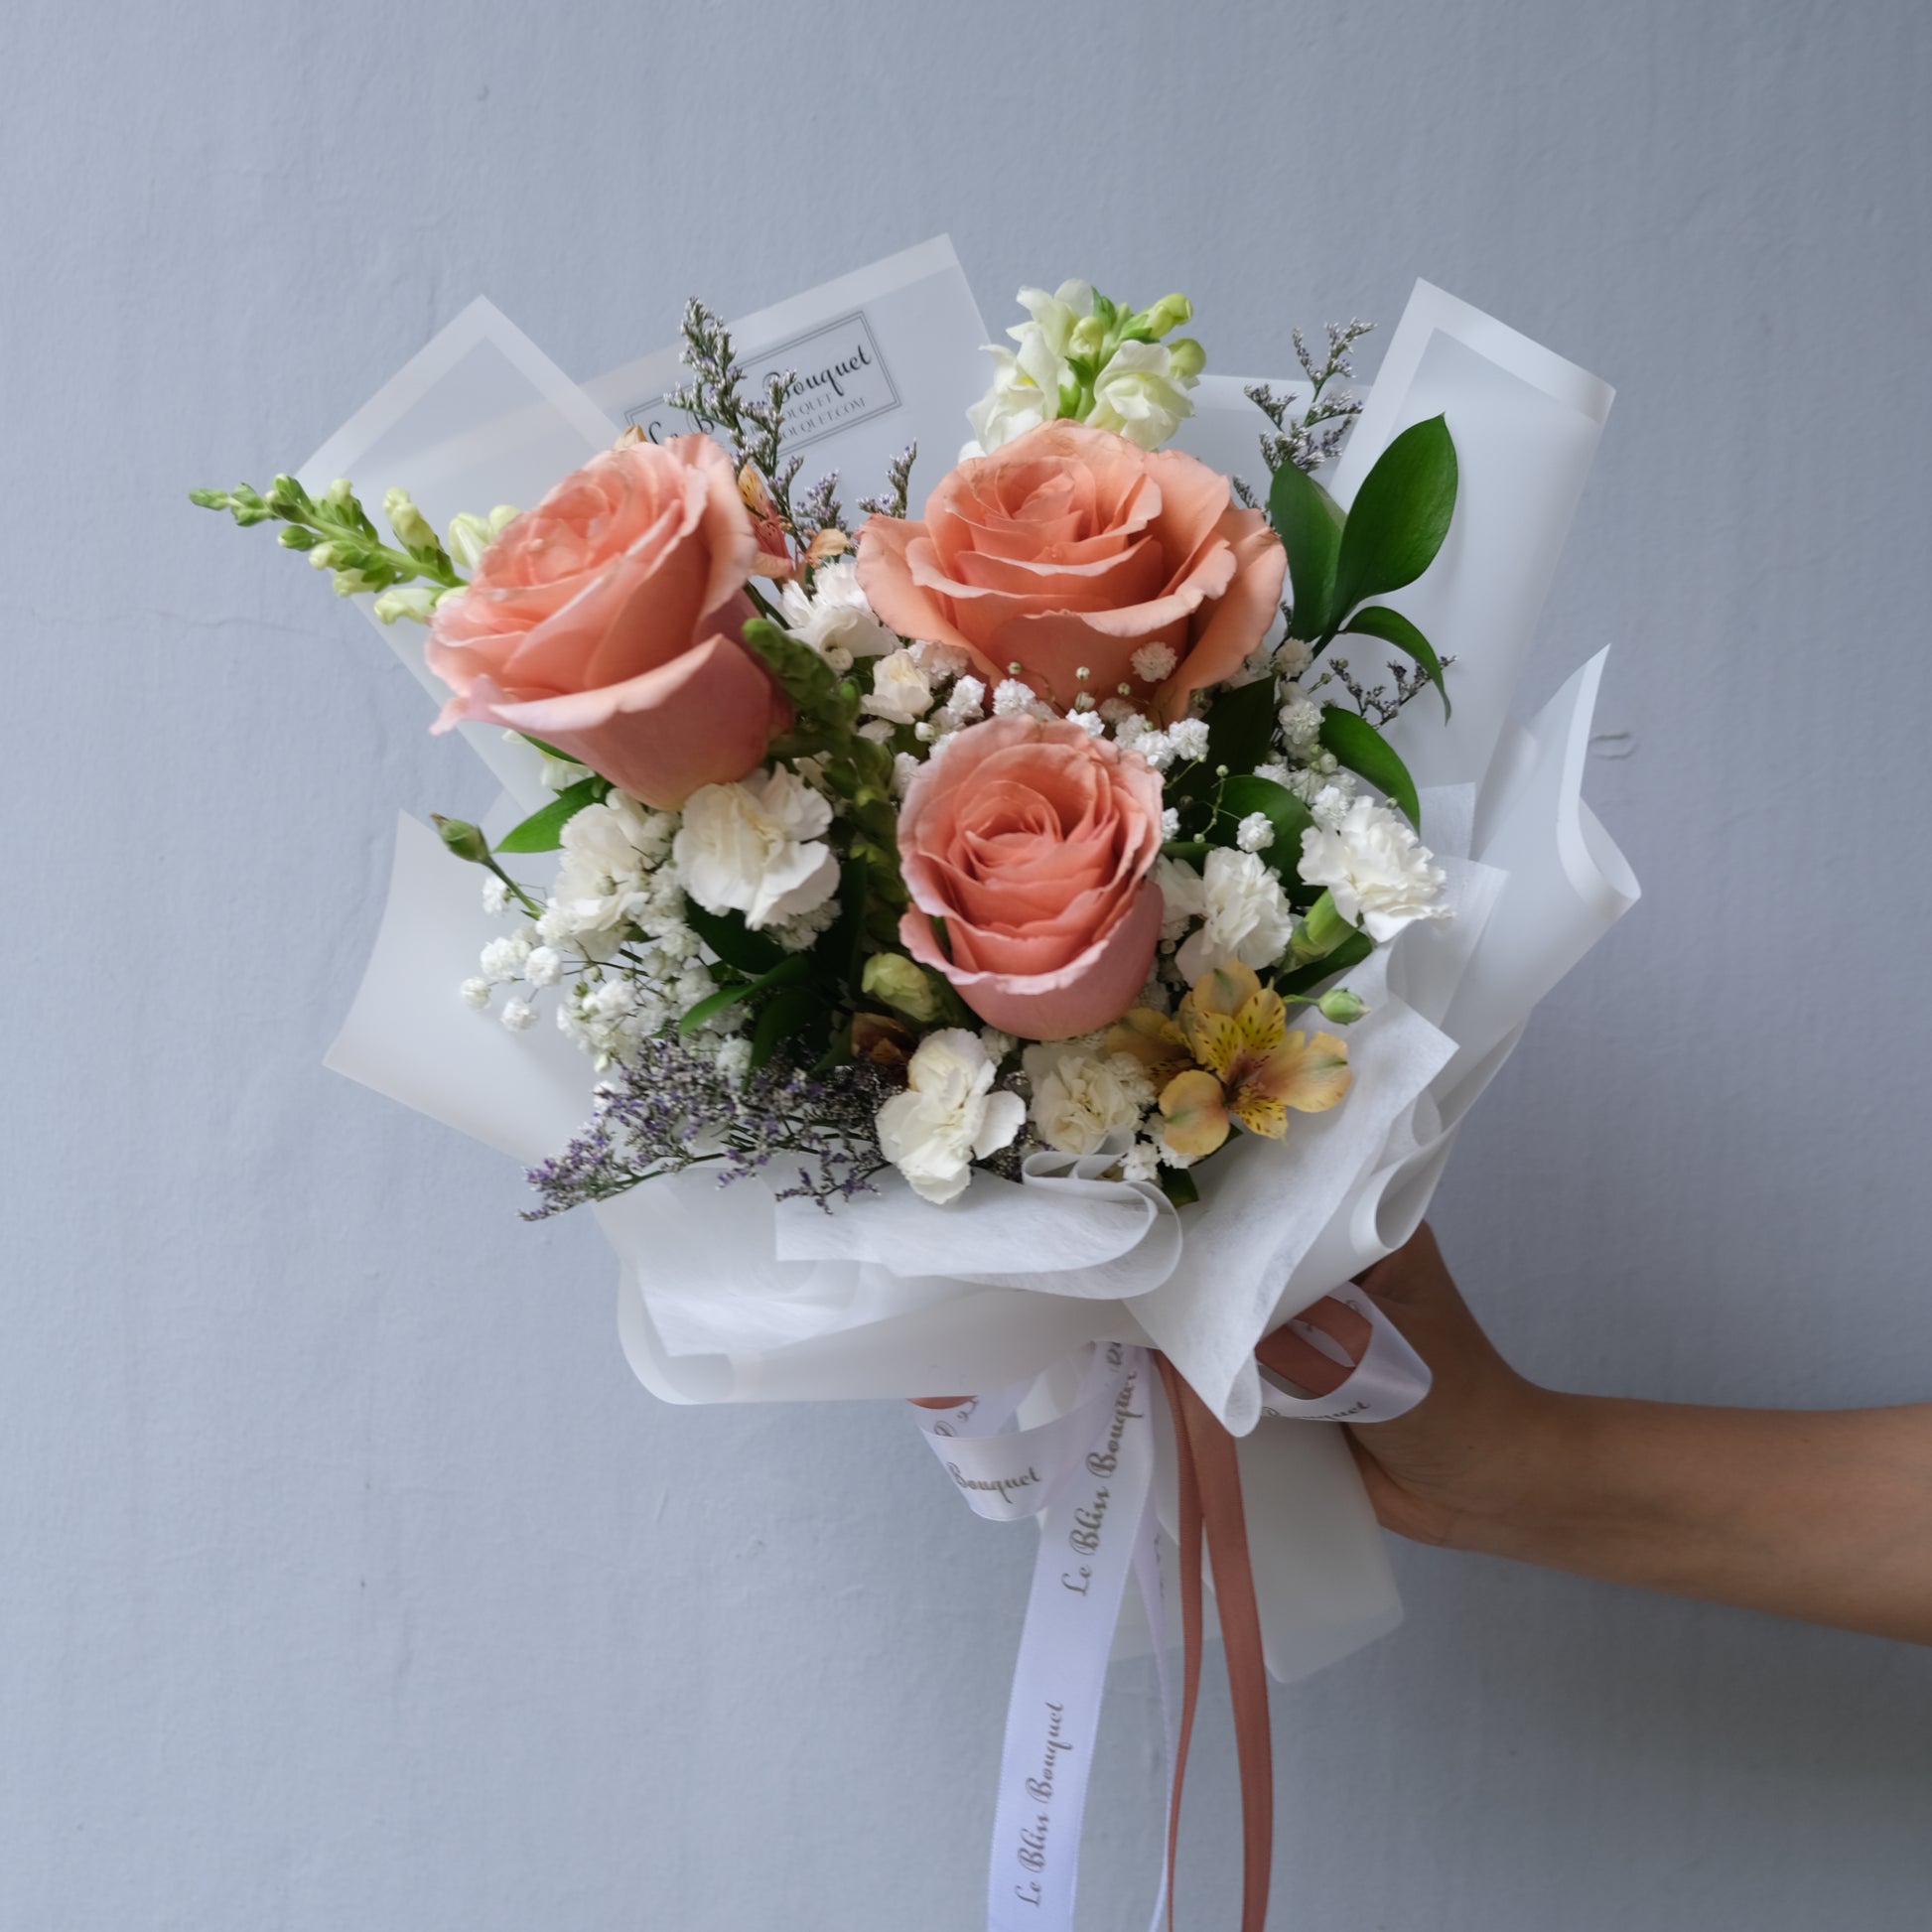 RP Moab Rose Smallie Bouquet - Le Bliss Bouquet